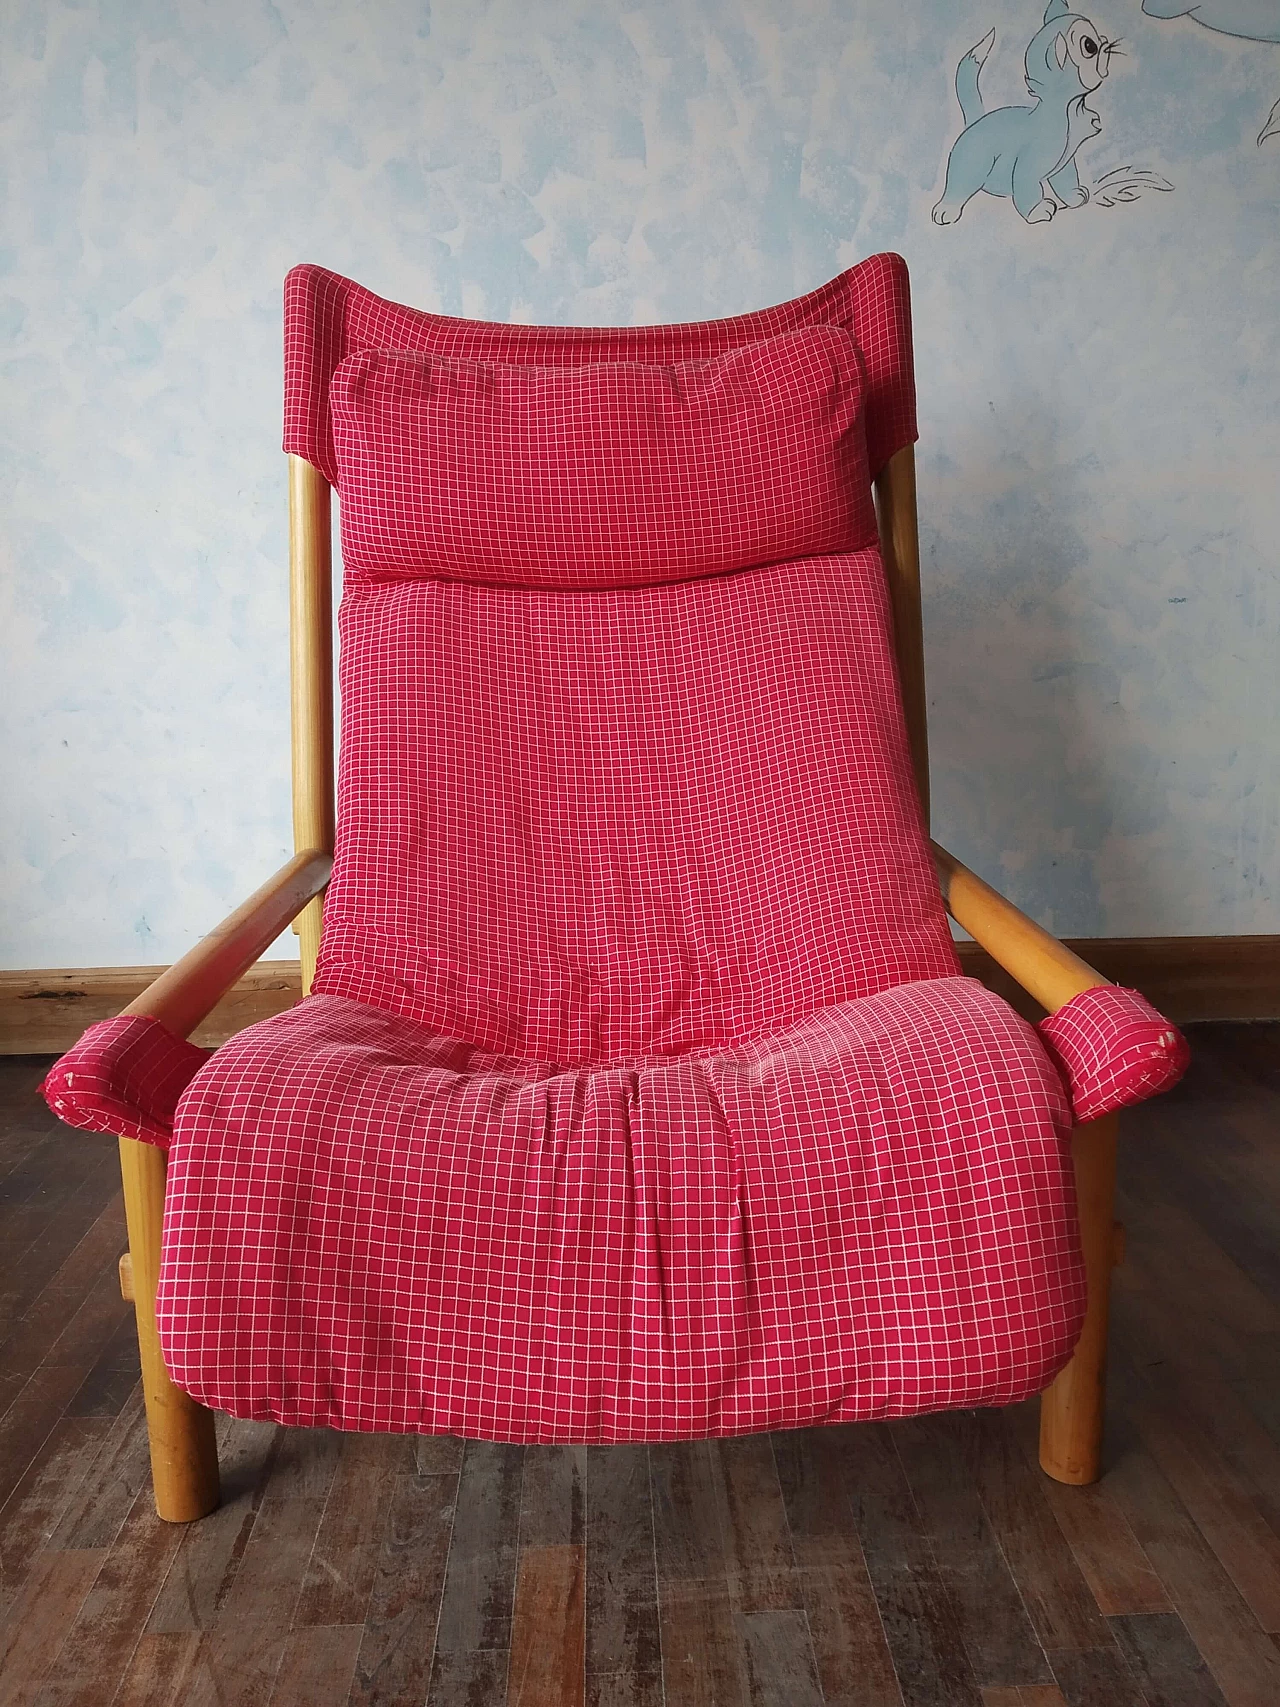 Carmina armchair by Carlo Santi for Arflex, 1970s 1468649